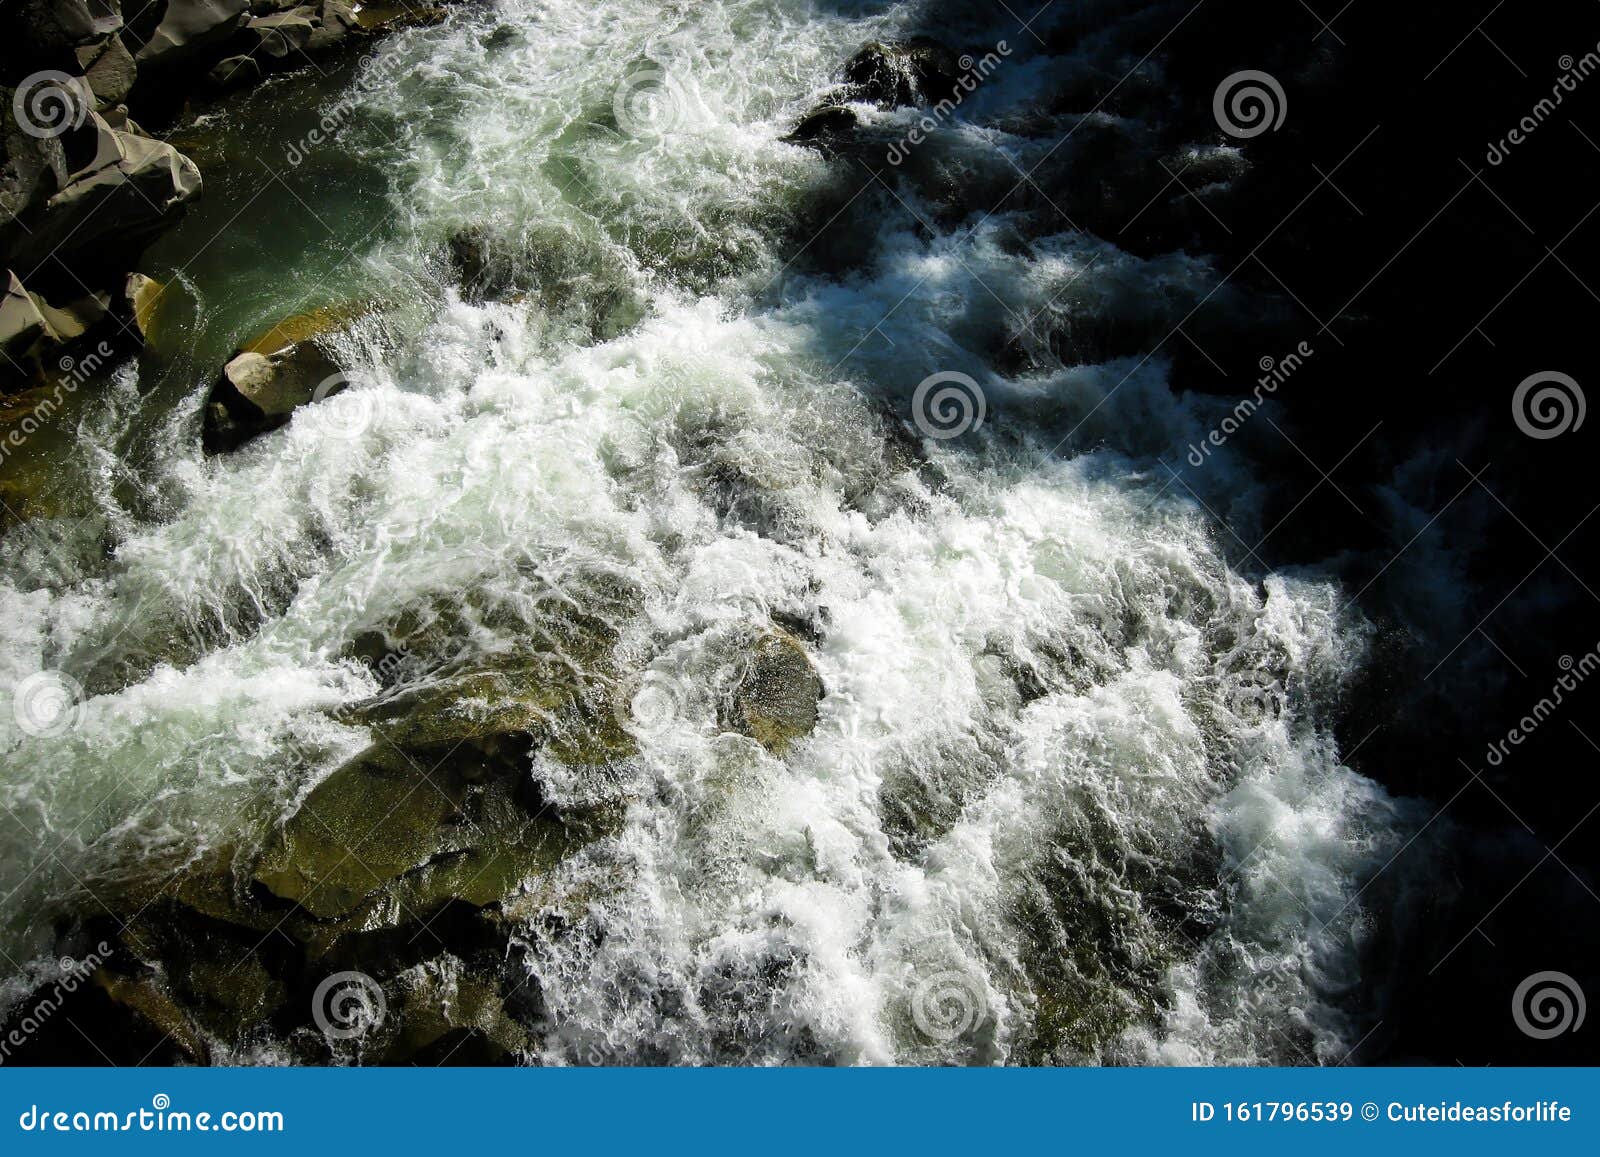 Meravigliose Cascate E Rapidi Di Pietra Sul Fiume Meraviglioso E Luminoso Potere Della Natura Immagine Stock Immagine Di Erba Cascata